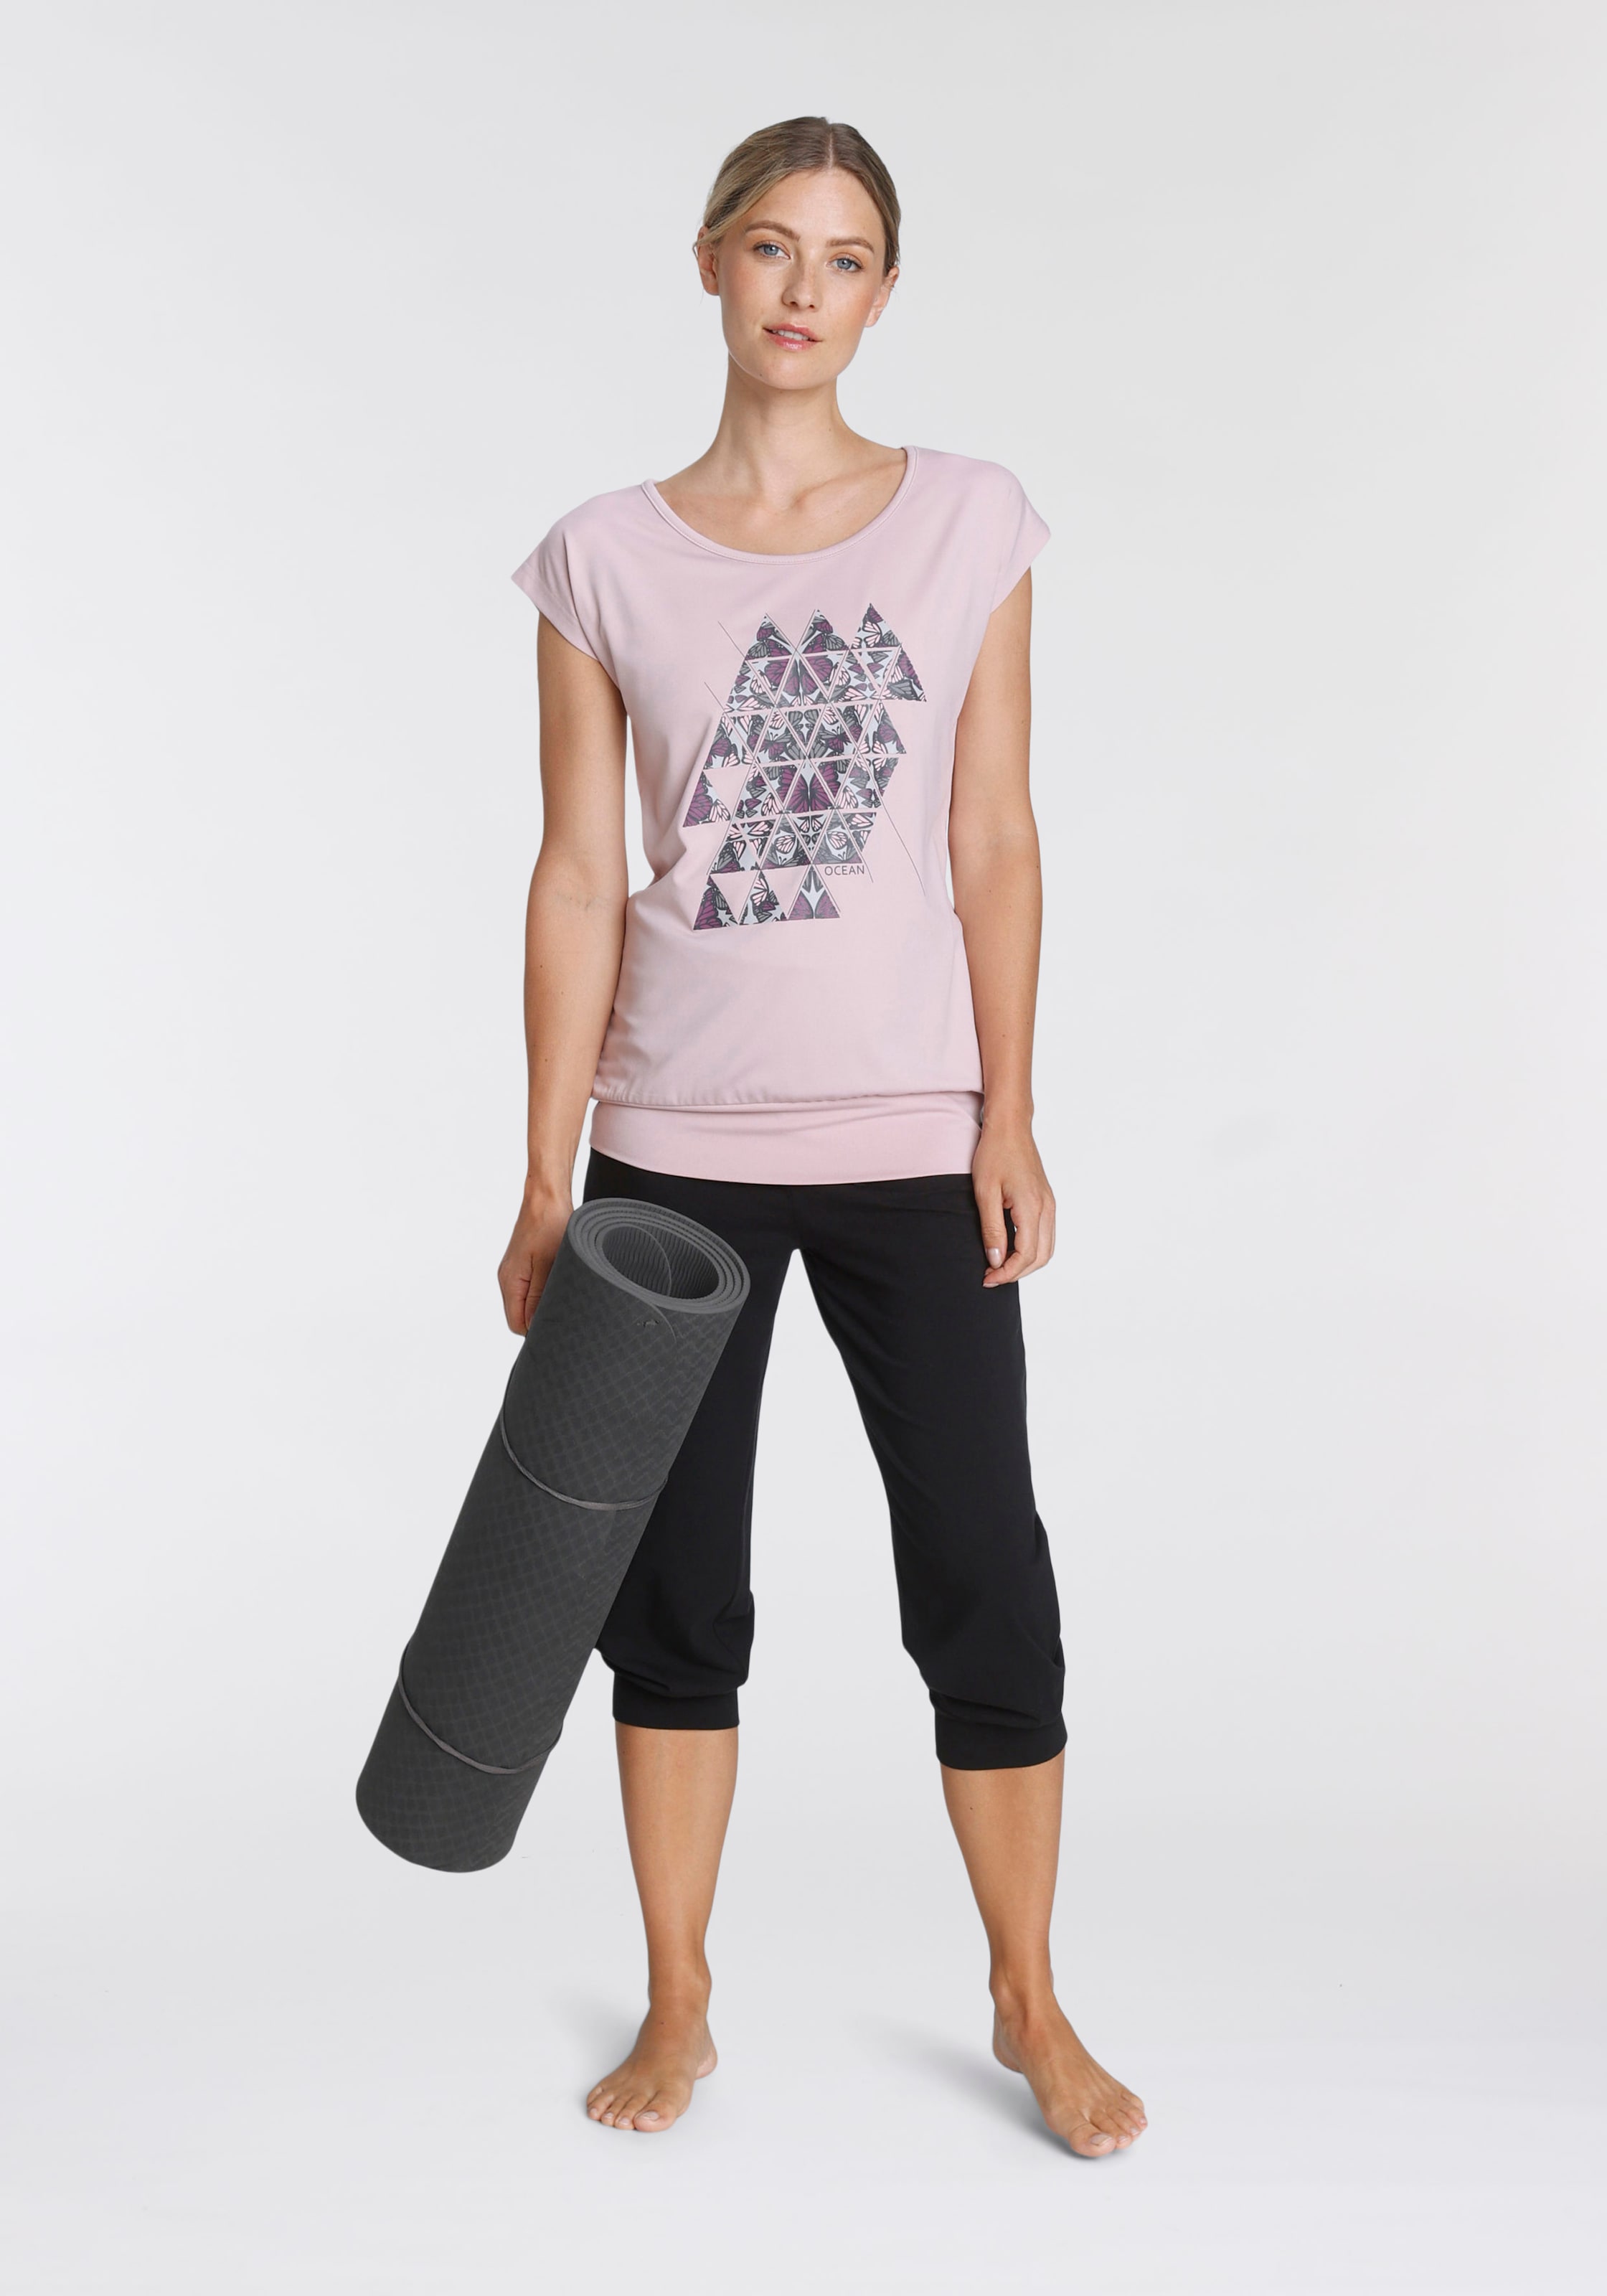 Yoga-Kleidung online kaufen | Attraktive Yogawear bei Quelle